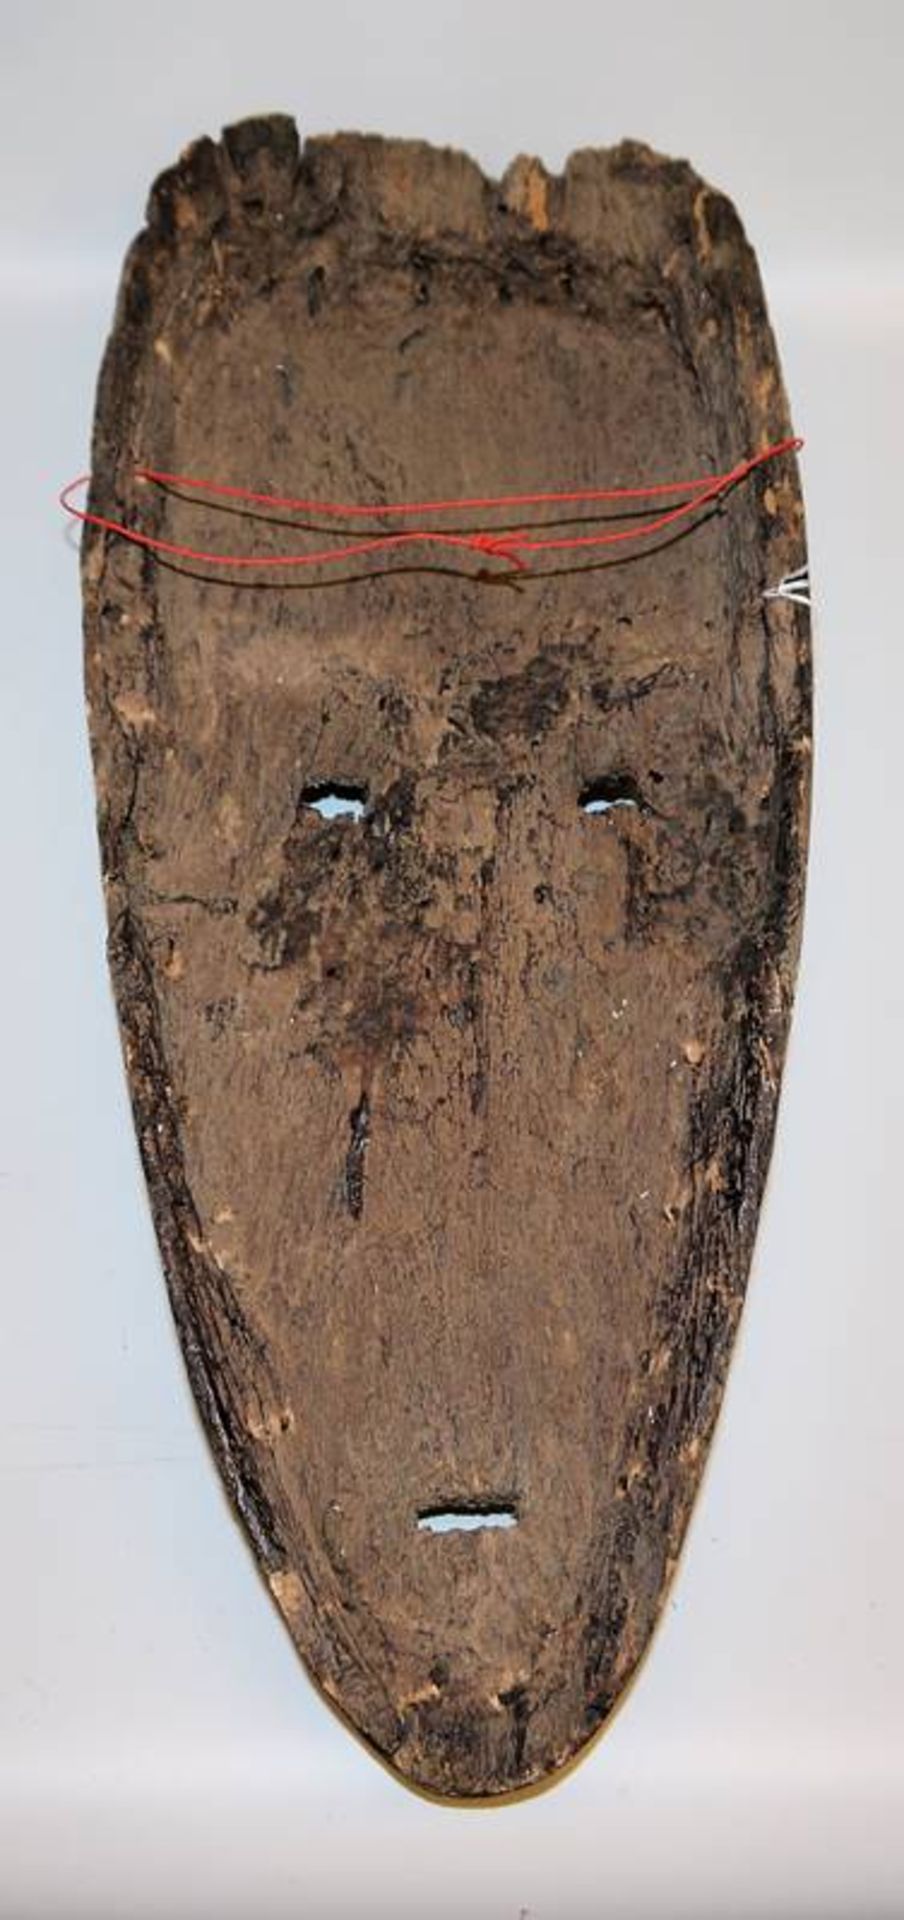 Dance mask "Ngontang" of the Fang, Gabon - Image 2 of 3